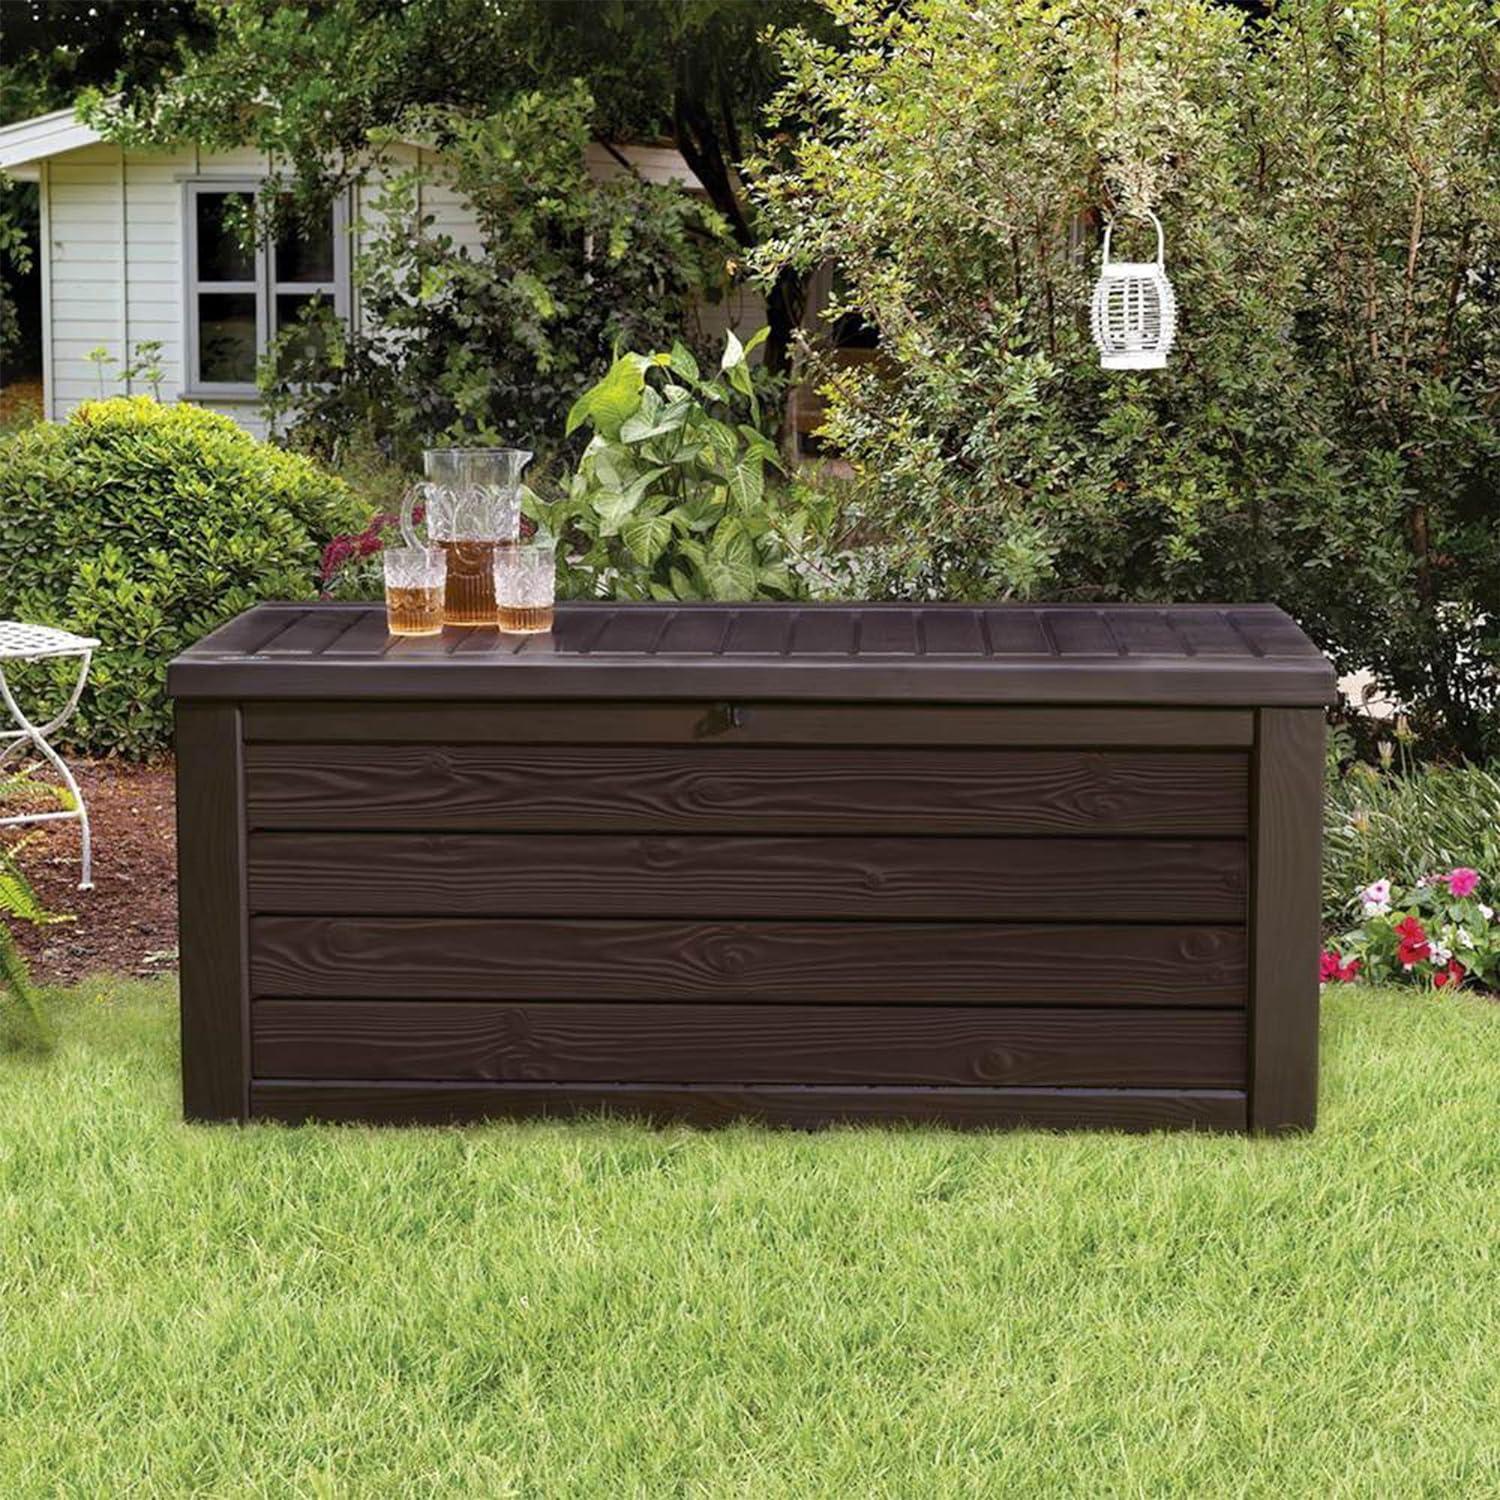 Westwood Resin Wicker 150 Gallon Outdoor Storage Deck Box, Dark Brown